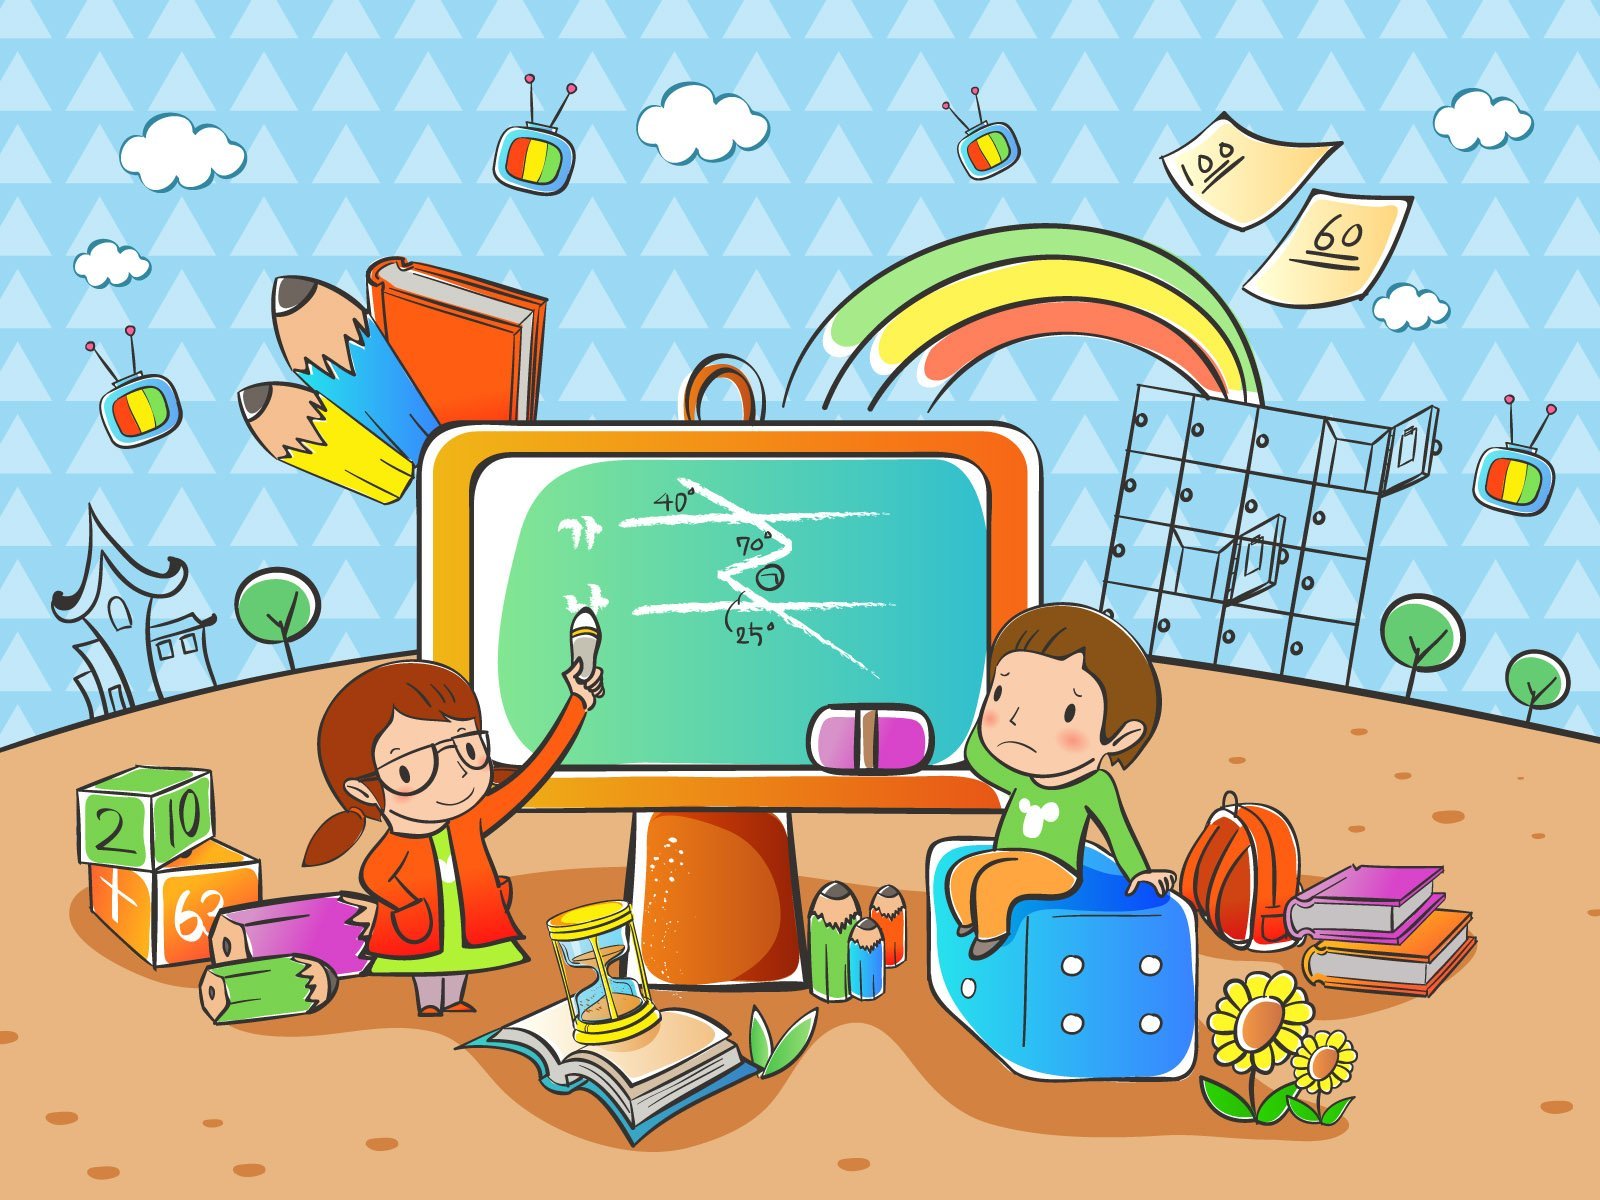 Игра интернет развивать. Иллюстрации на школьную тему. Мультяшные школьники. Интерактивные игры. Компьютерные рисунки детей.